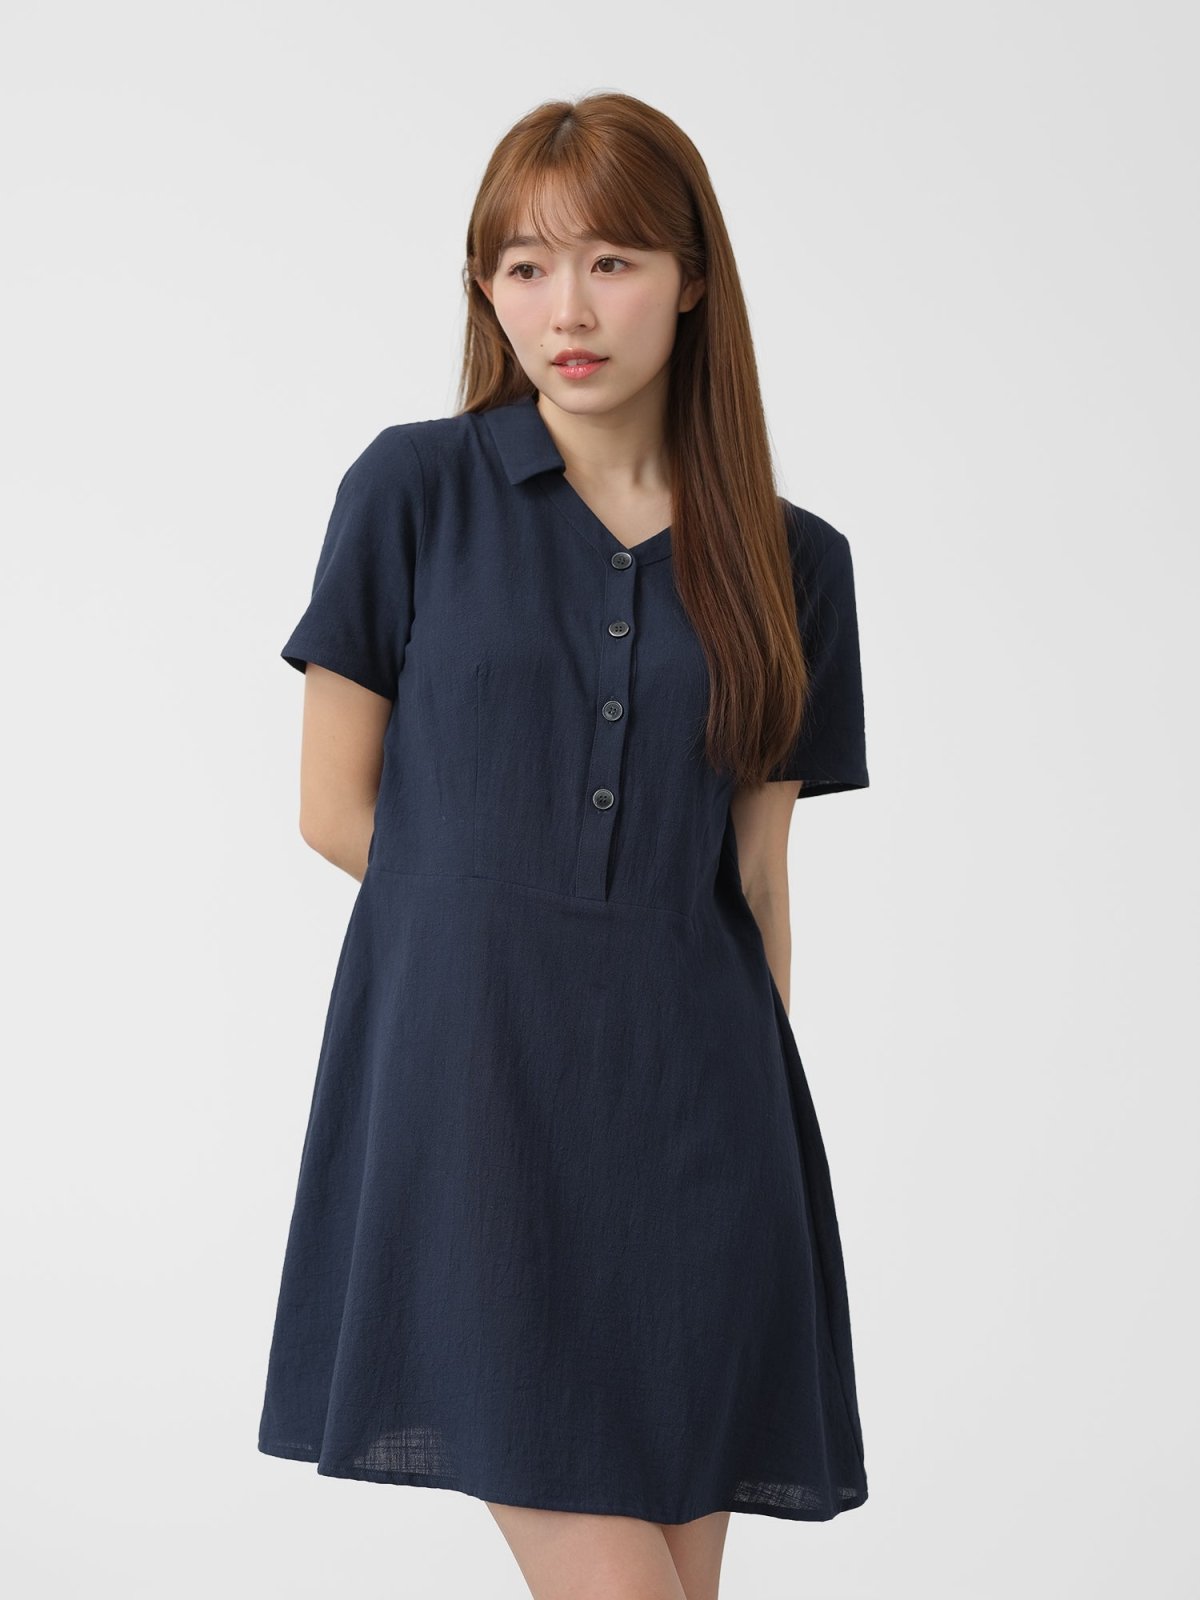 Open Collar Cotton Dress - DAG-DD1447NavyS - Navy Blue - S - D'zage Designs